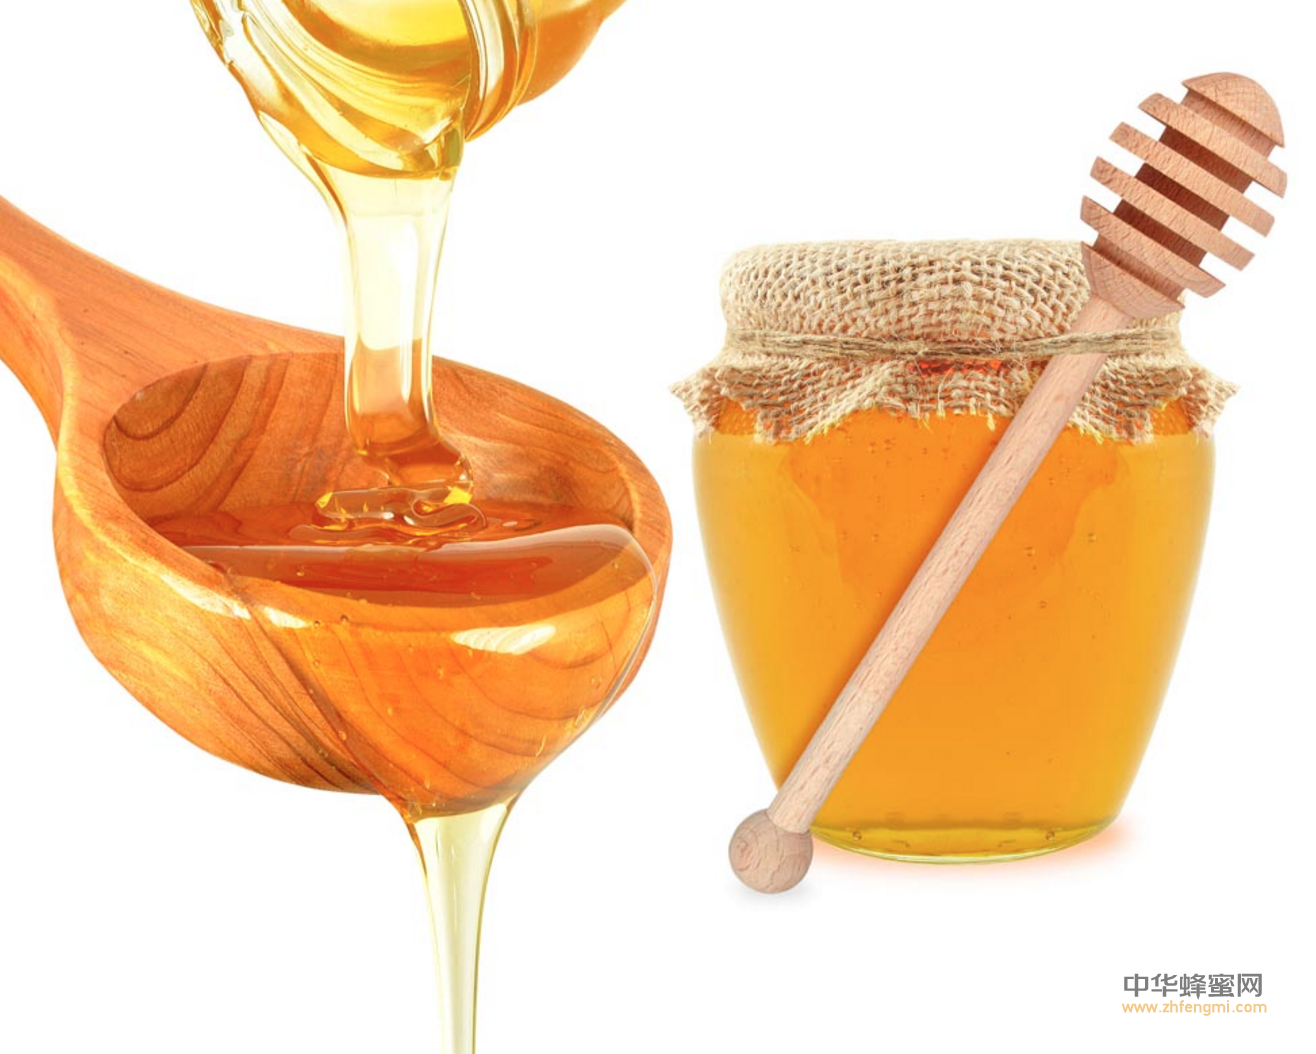 蜂产品 蜂蜜 蜂蜜发酵 嗜渗酵母 蜂蜜品质 蜂蜜质量安全